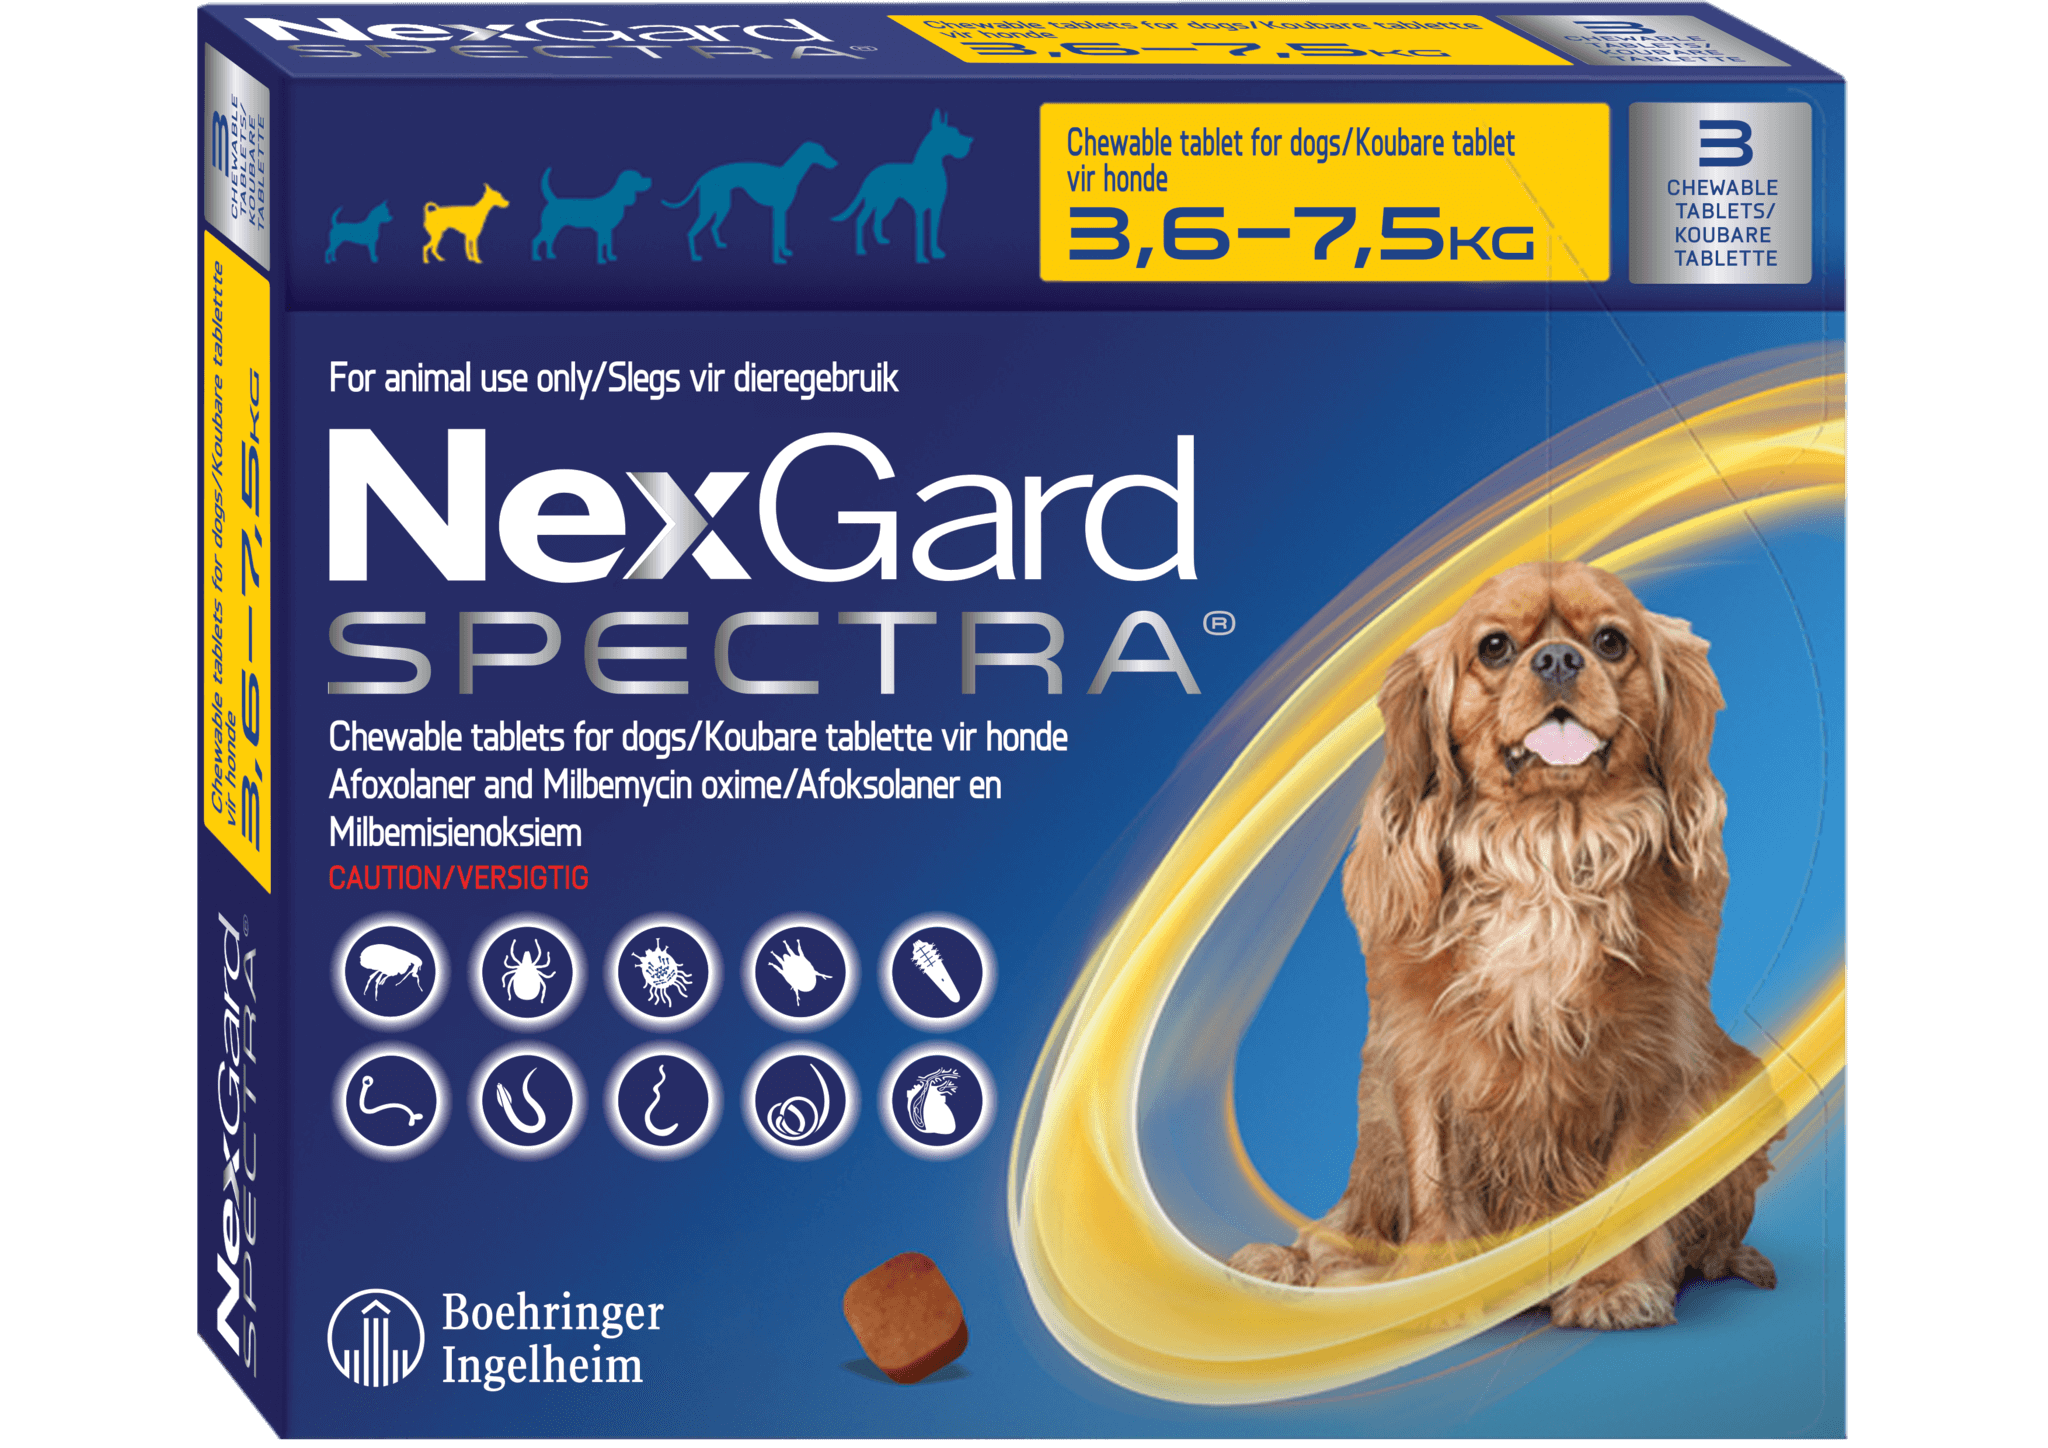 Нексгард для собак до 10 кг. НЕКСГАРД спектра для собак 2-3.5 кг. НЕКСГАРД спектра для собак 3,5-7. НЕКСГАРД для собак 7.5. NEXGARD Spectra для собак.